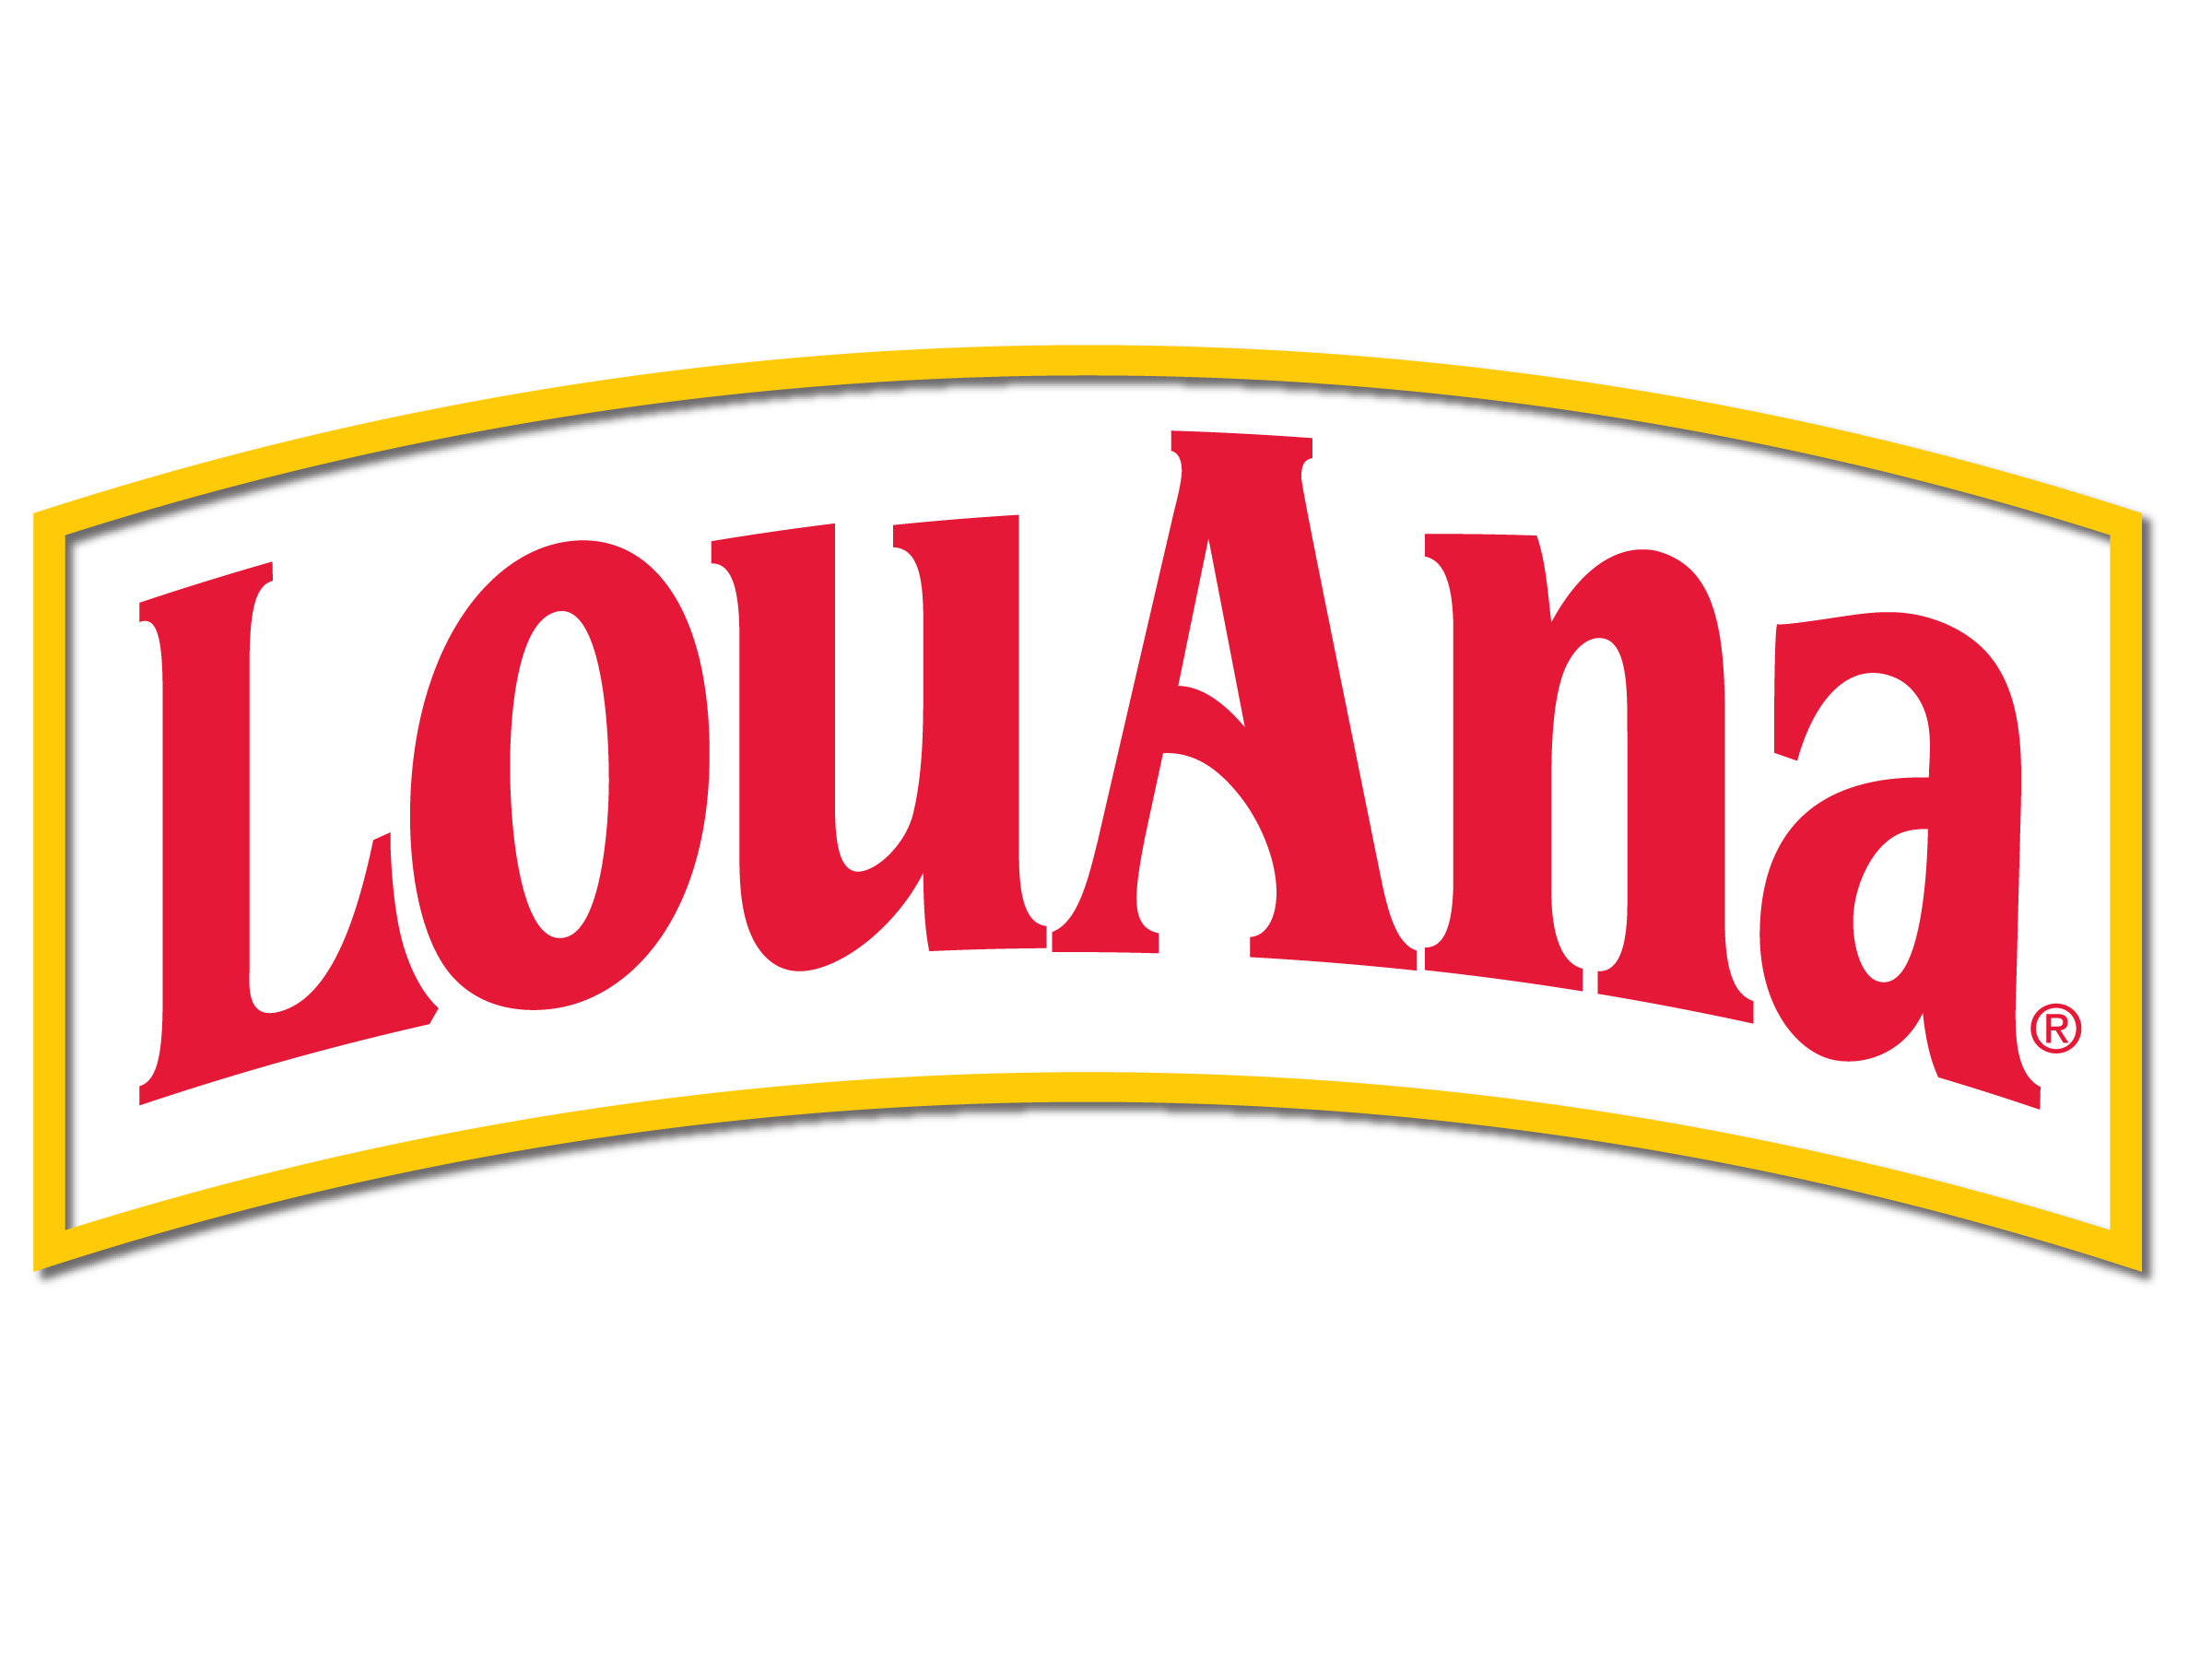 Logo of LouAna, the coconut oil supplier